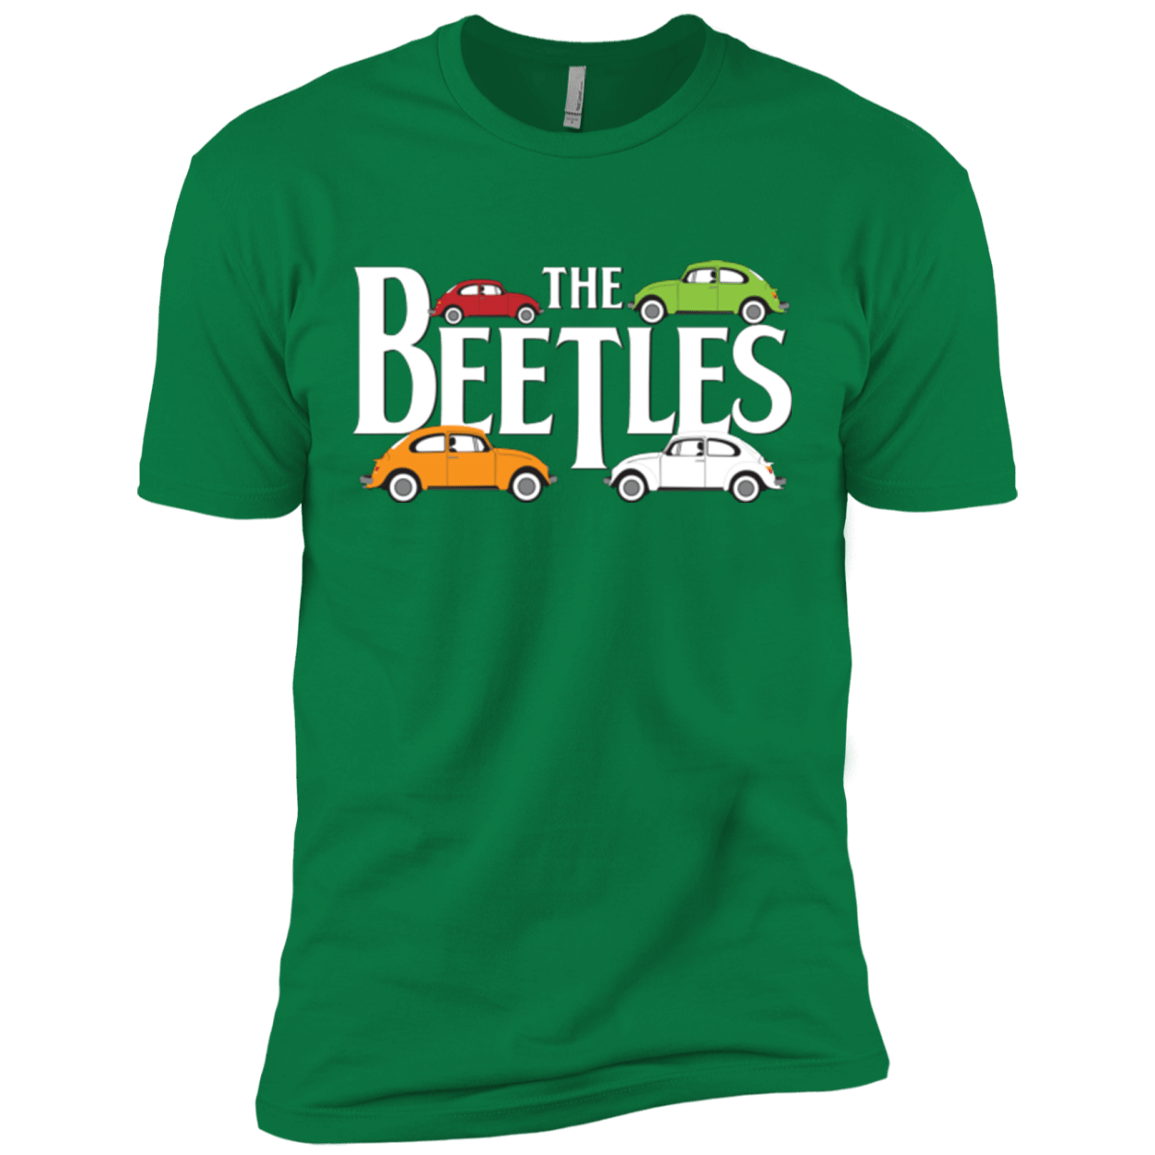 The Beetles Men's Premium T-Shirt